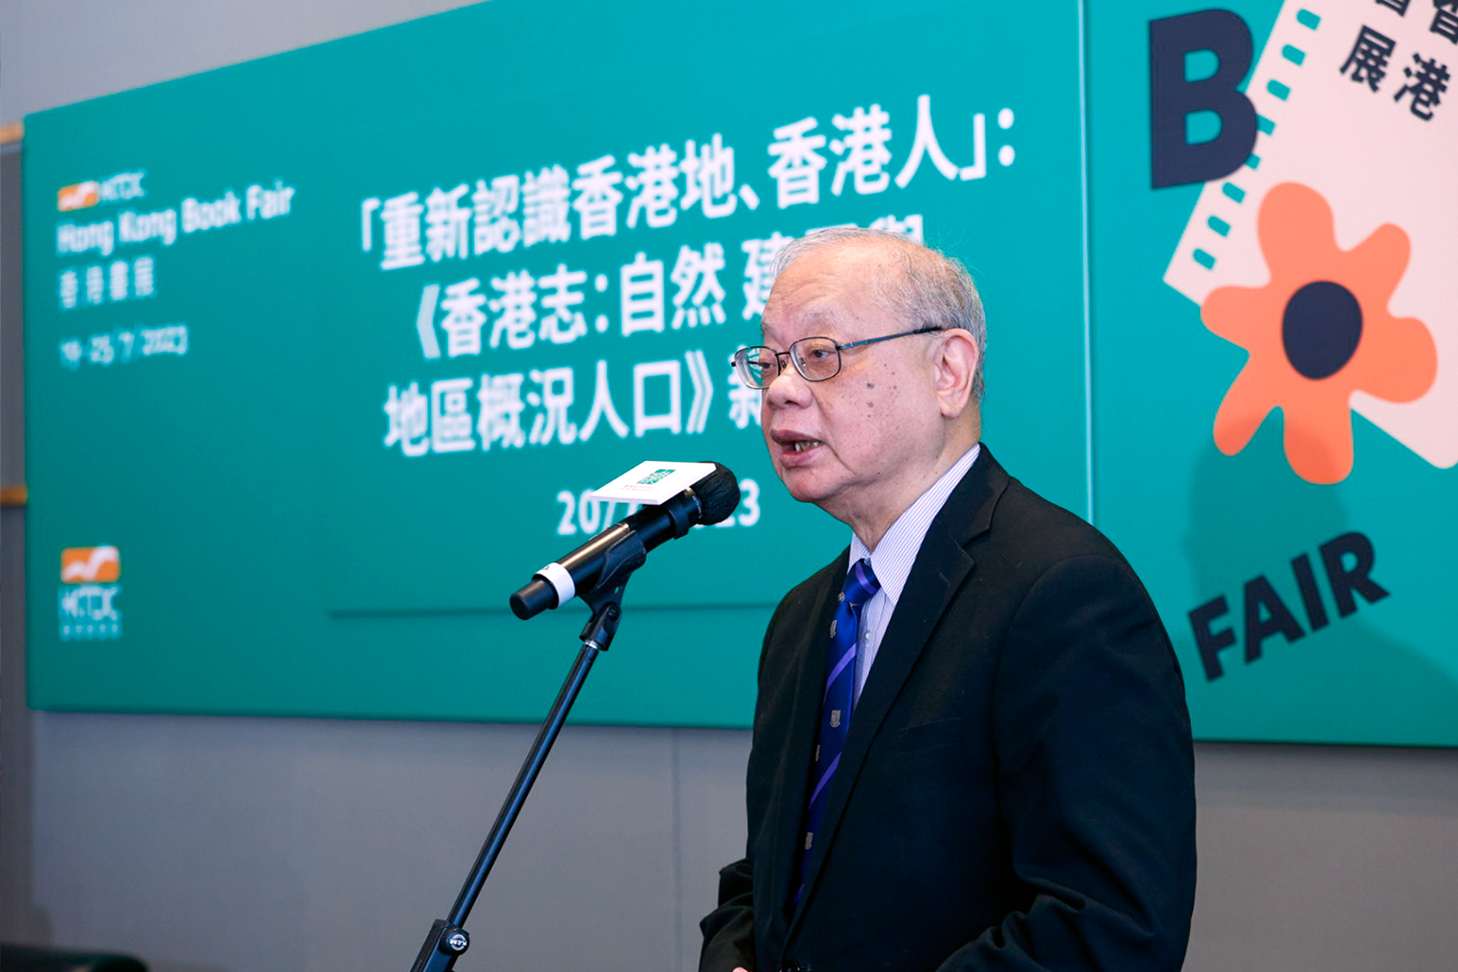 李焯芬教授表示：「香港地方志中心匯集超過500位社會賢達和專家學者，承擔編纂首部《香港志》的歷史使命，